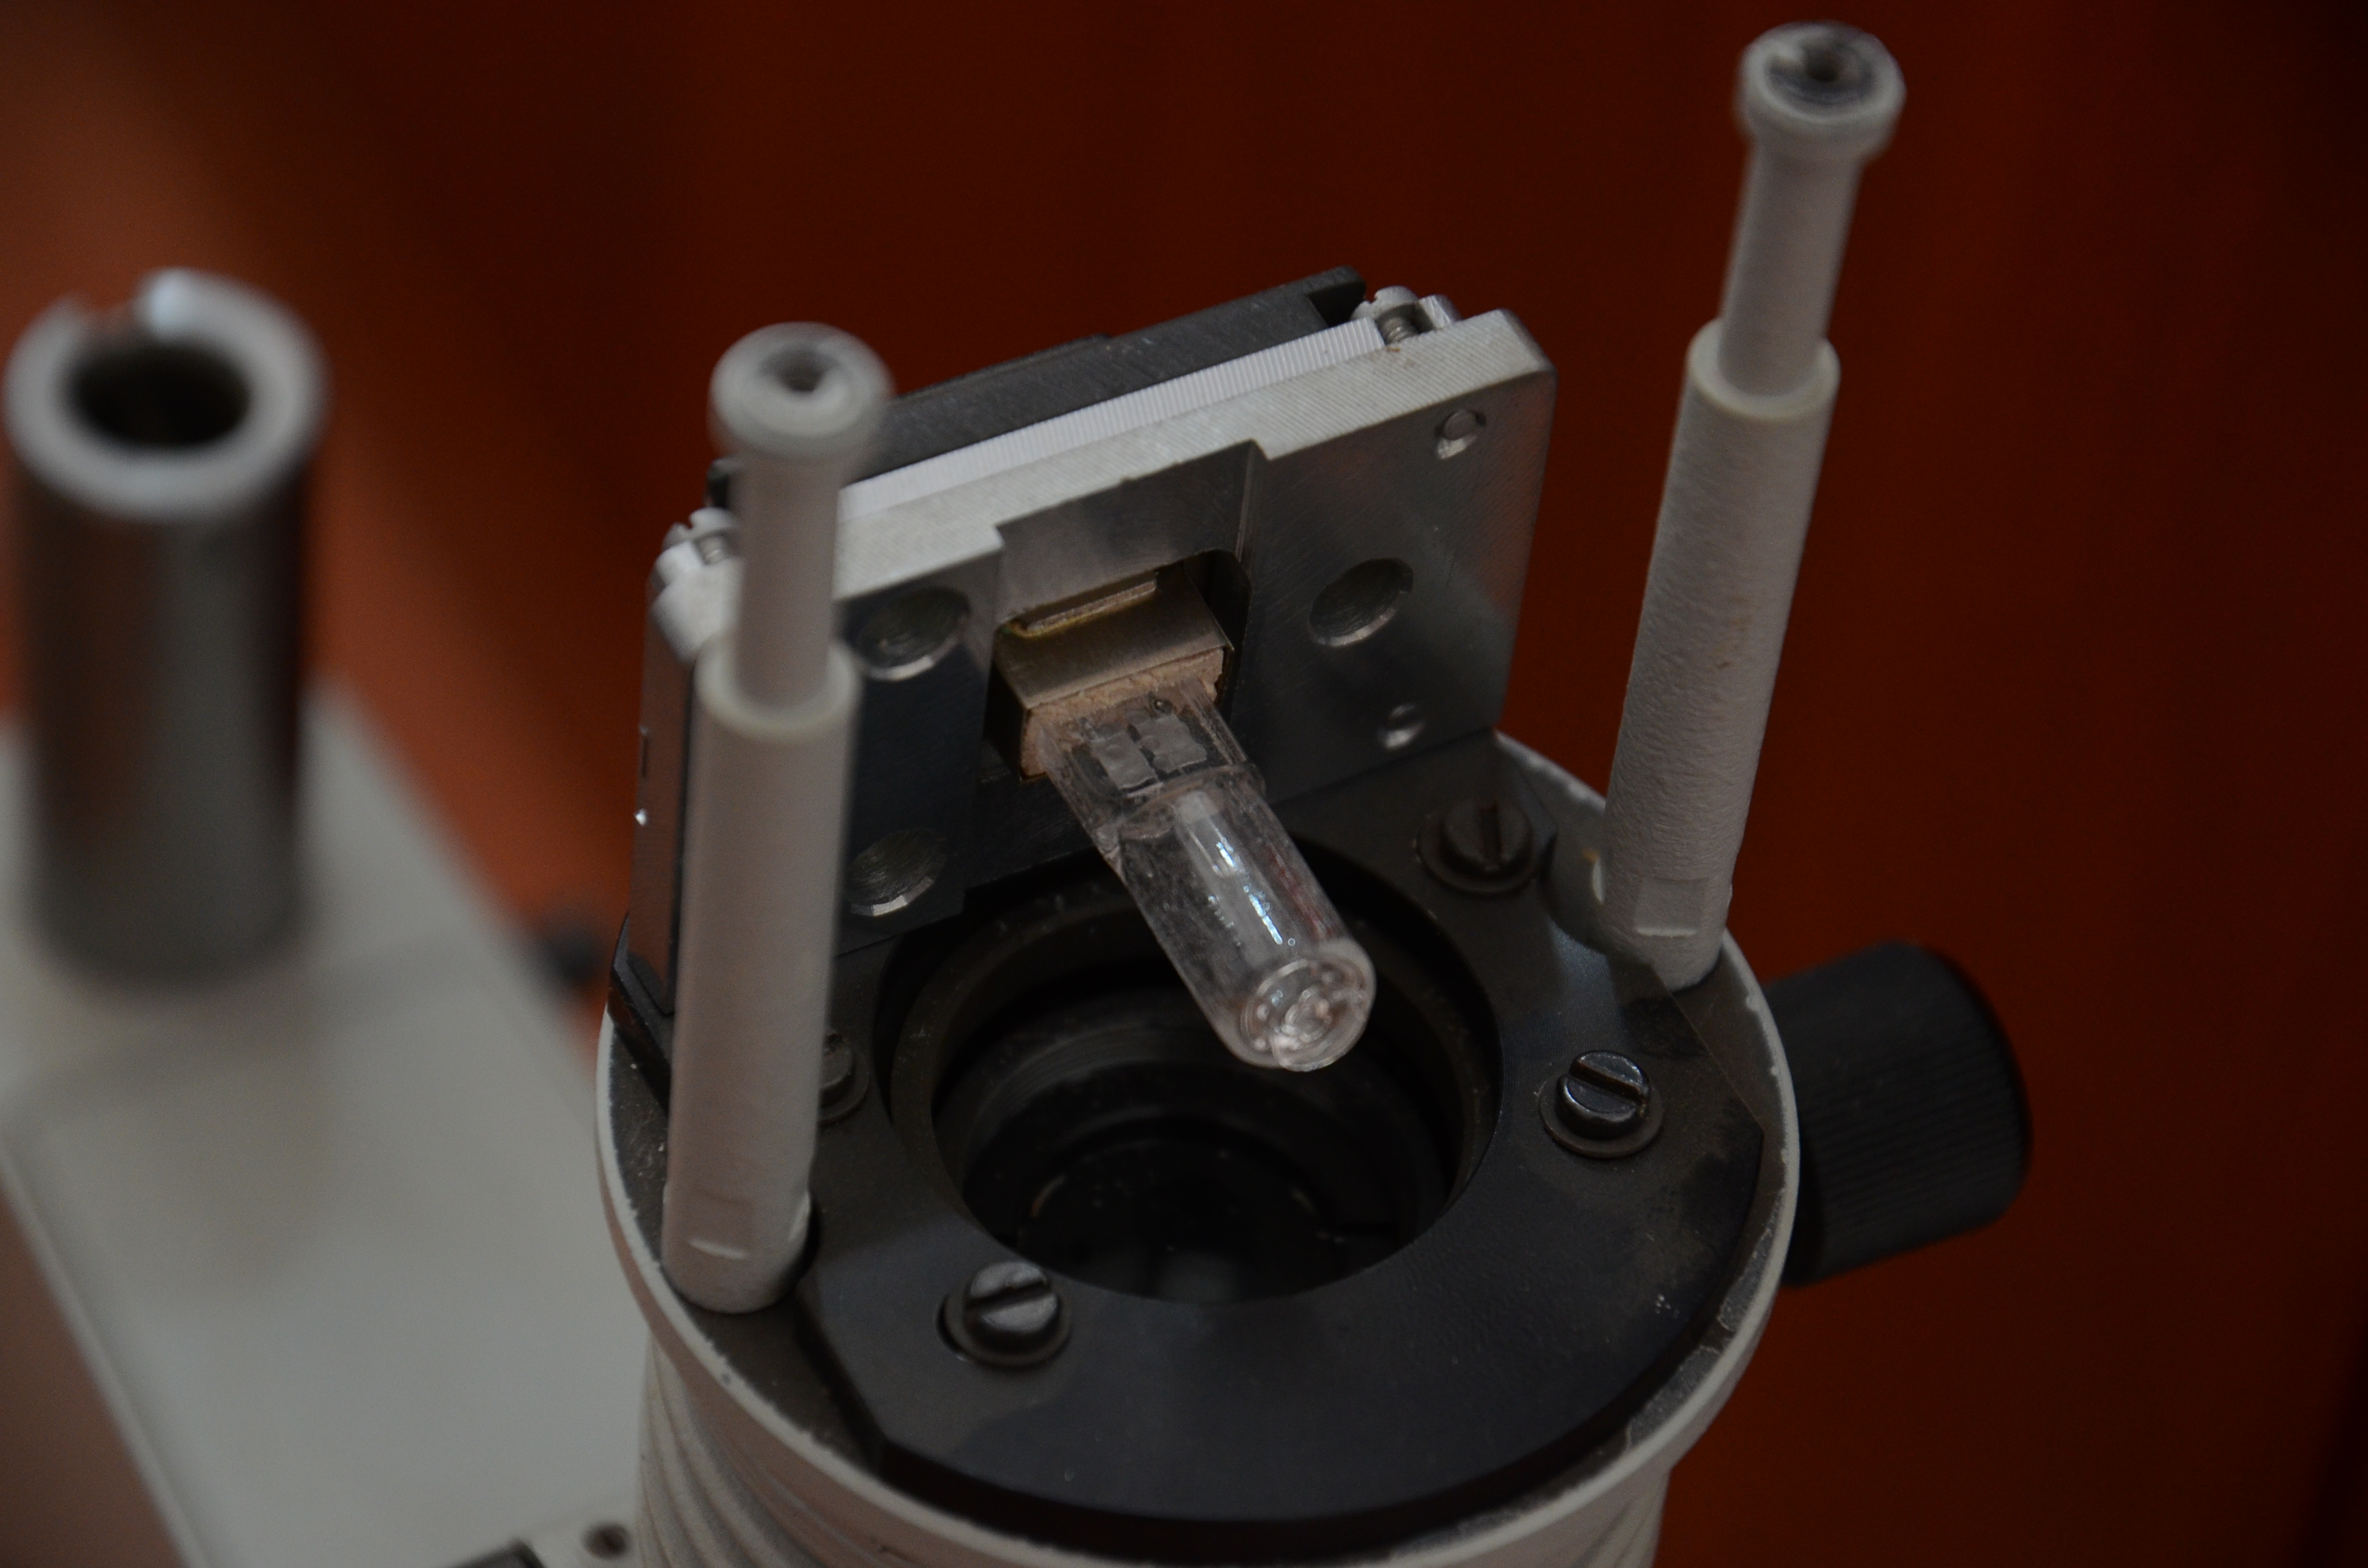 лампа КГМН 6-30 в осветителе микроскопа Биолам П-1